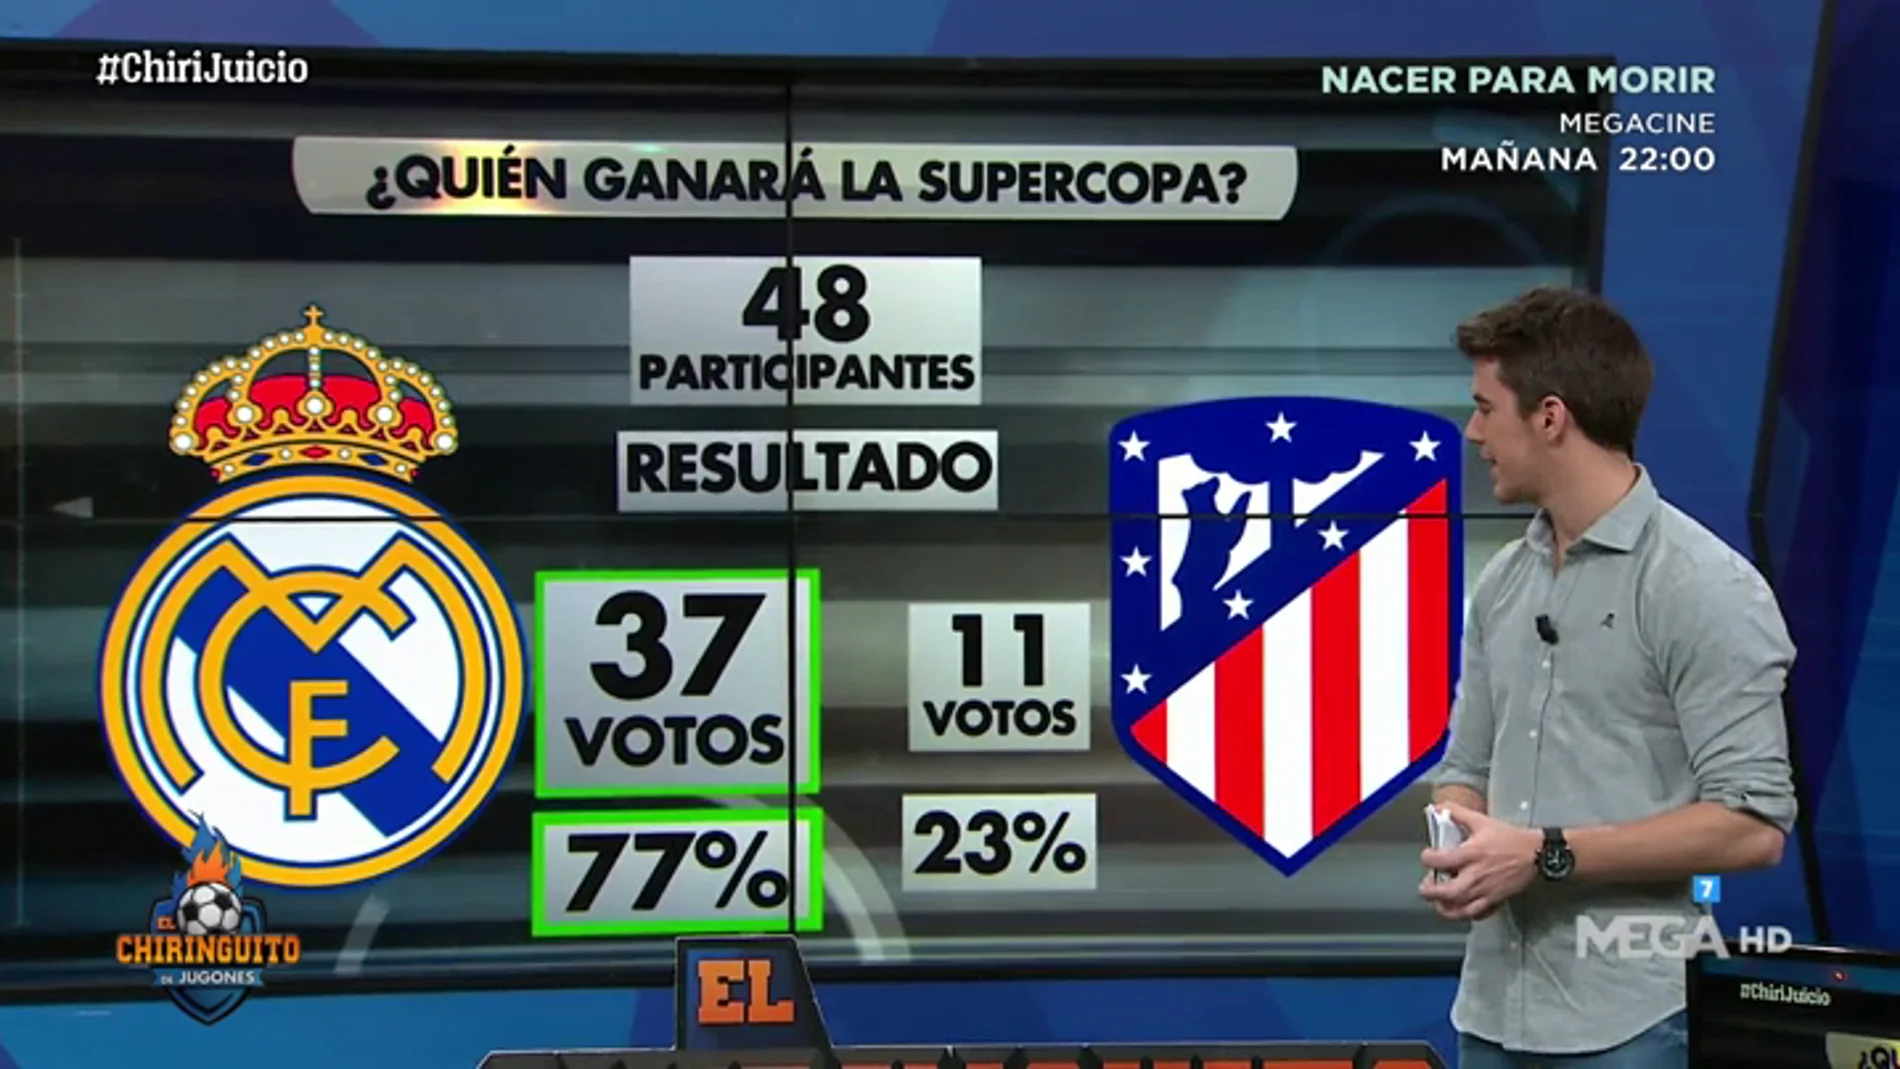 El Real Madrid ganará la Supercopa de España según los votos de el ChiriJuicio 